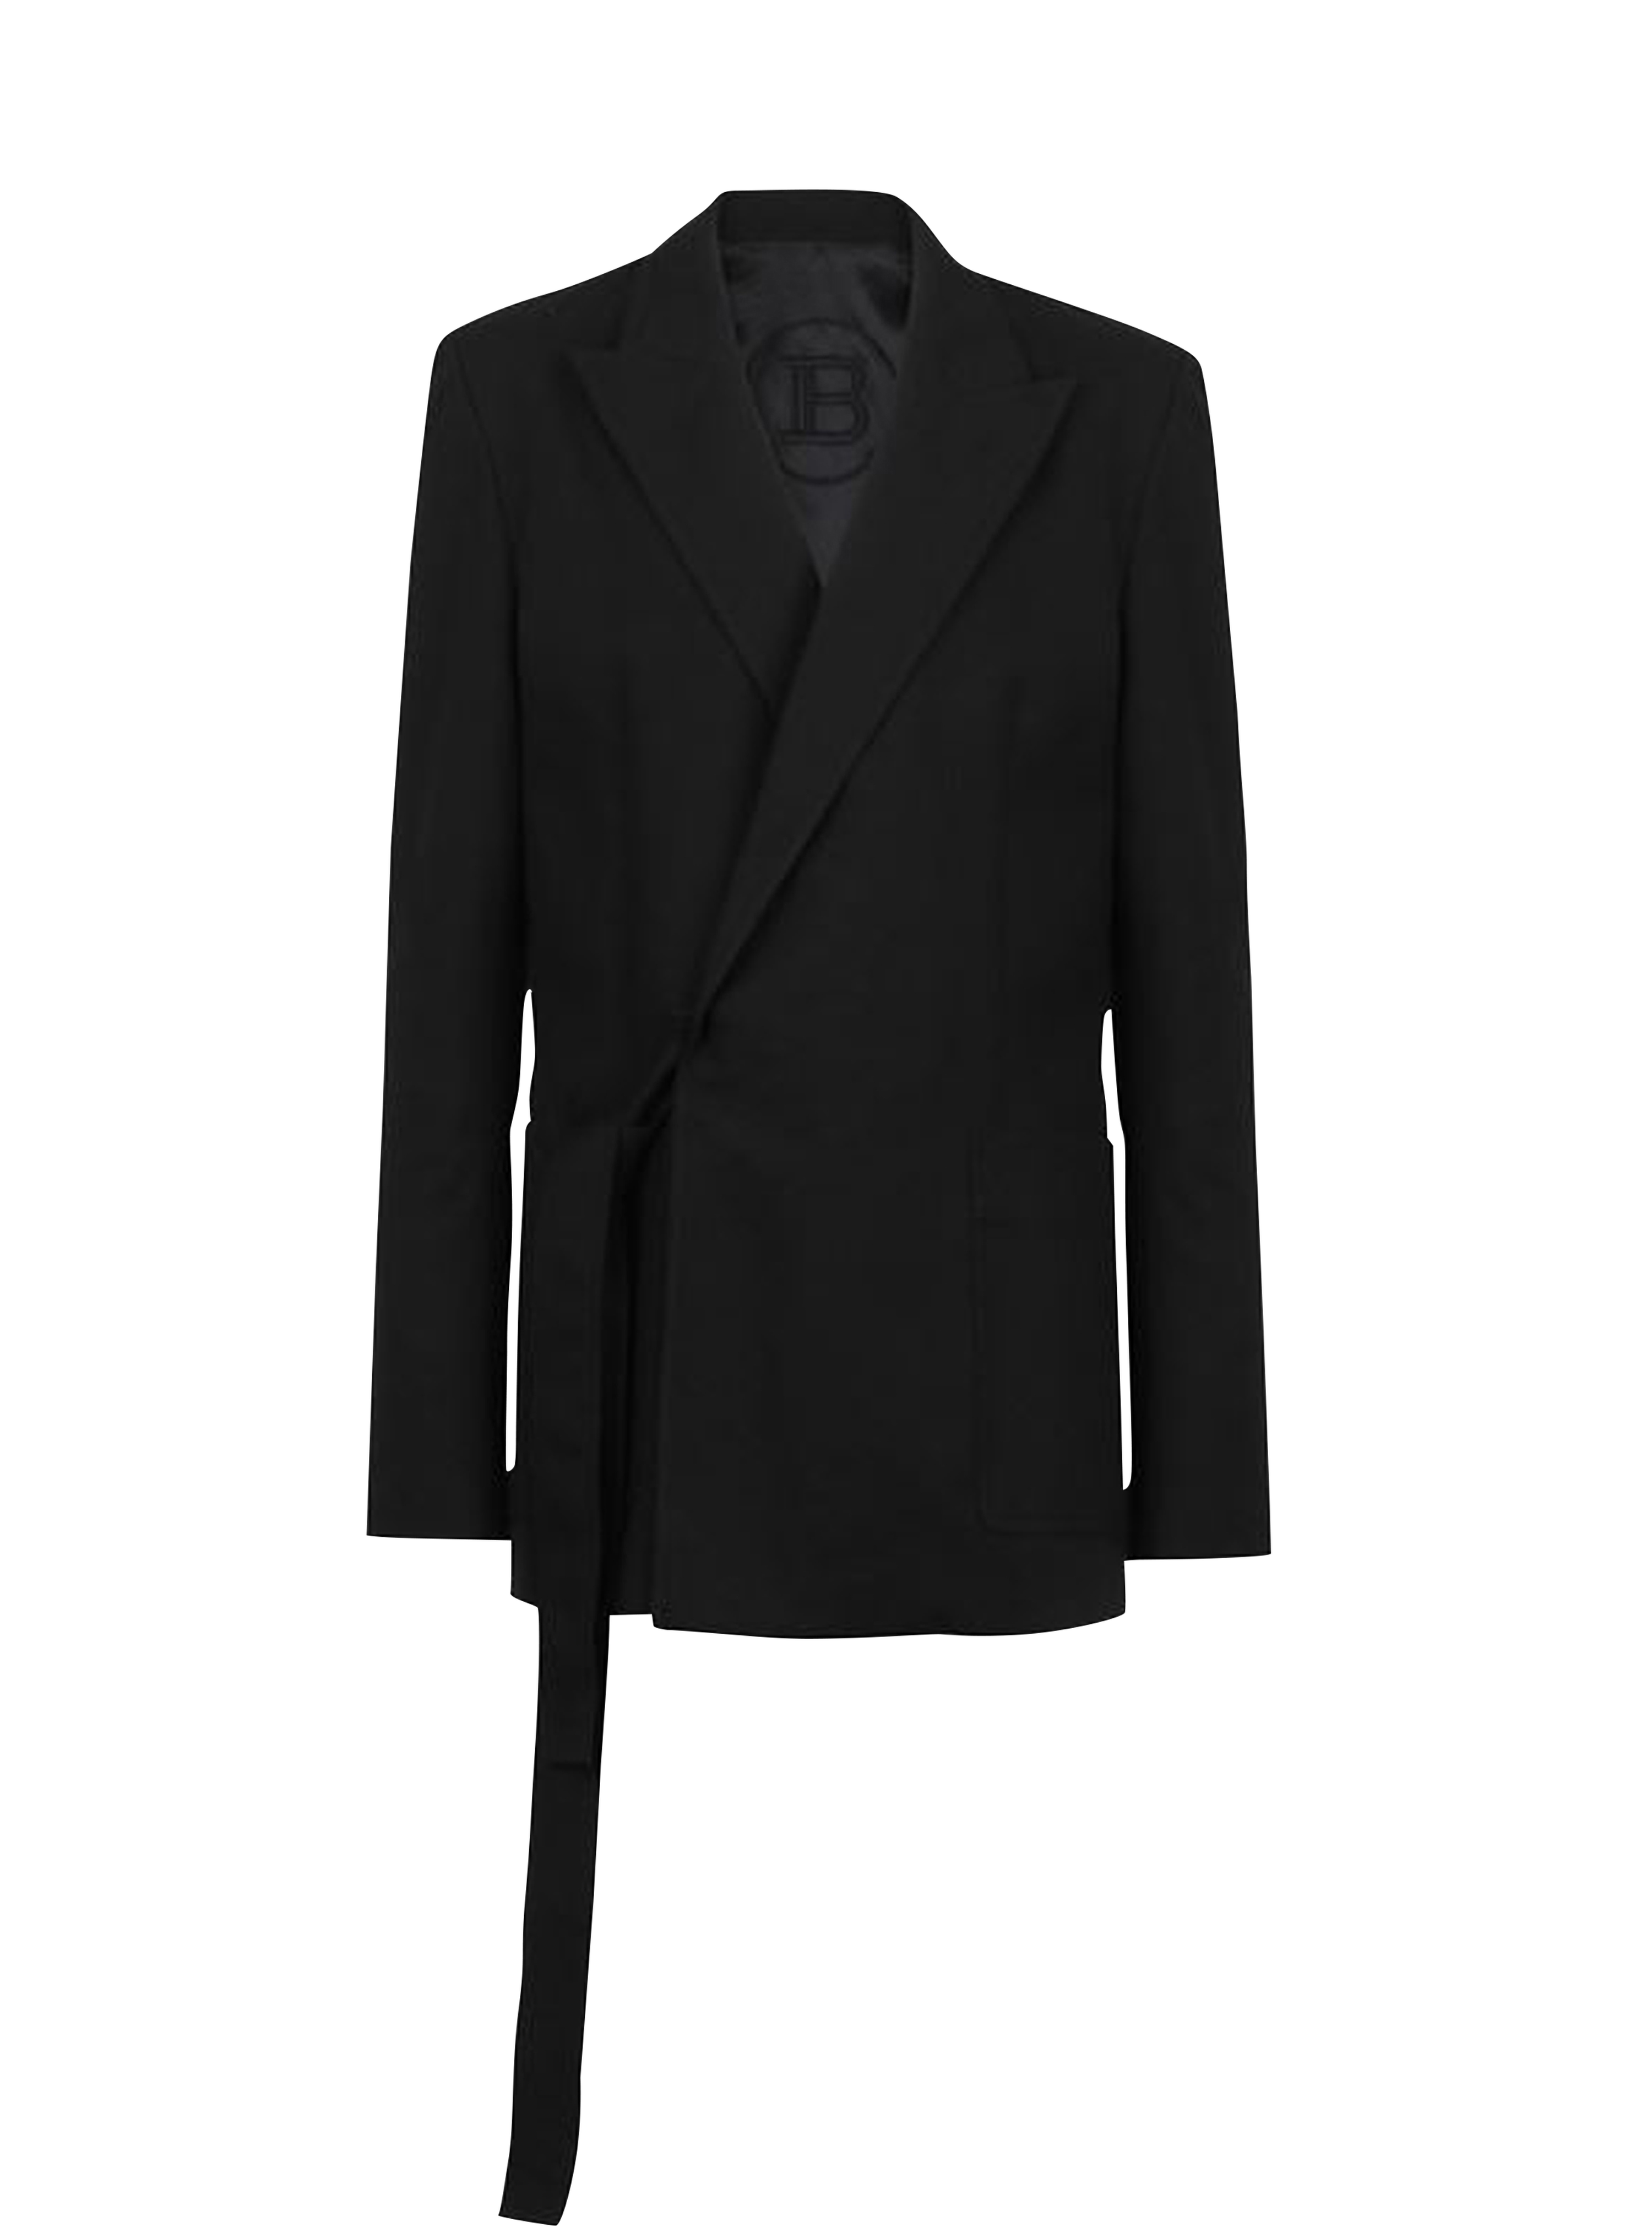 Asymmetrical cotton blazer, black, hi-res